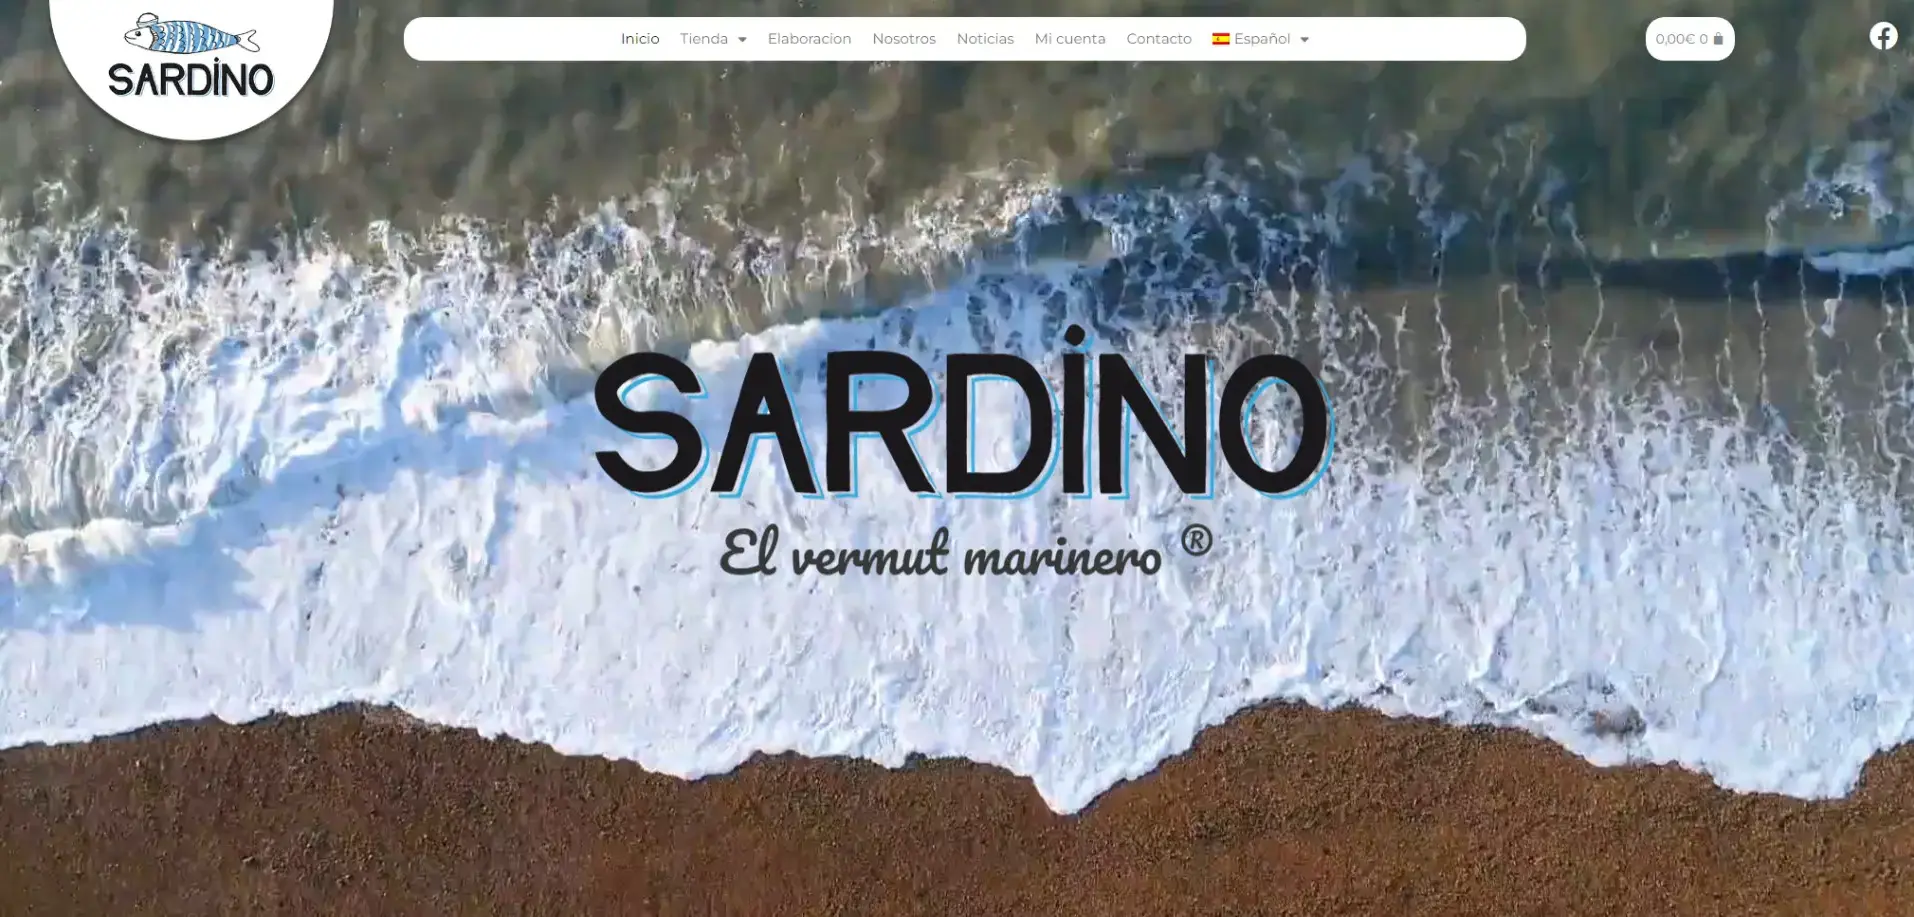 Sardino Vermut Ejemplo de pagina con diseño web en Santiago de compostela por TerritorioWeb